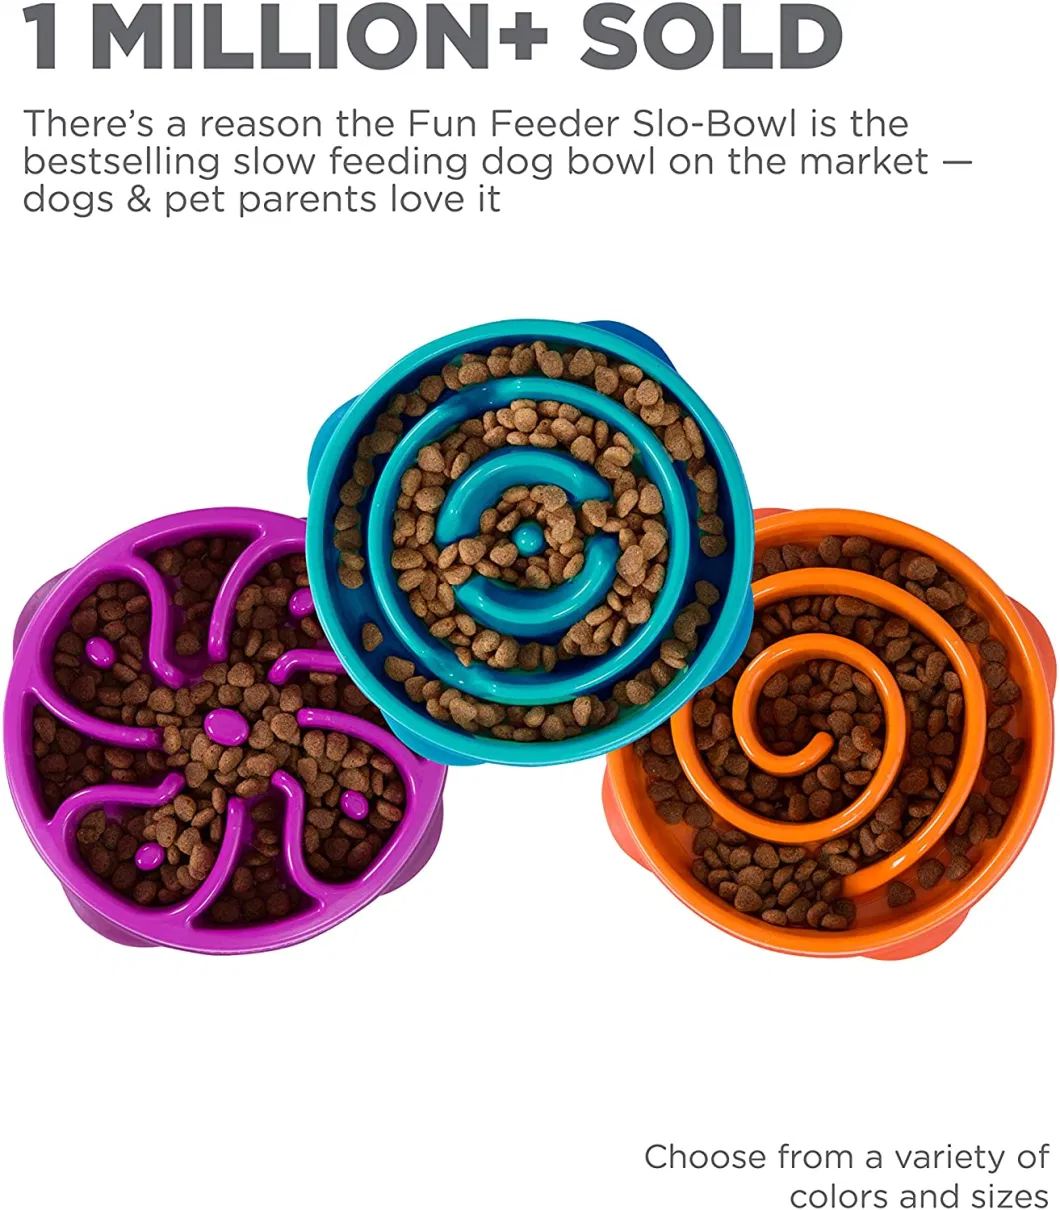 Outward Hound Fun Feeder Slo Bowl, Slow Feeder Dog Bowl, Medium/Mini, Turquoise